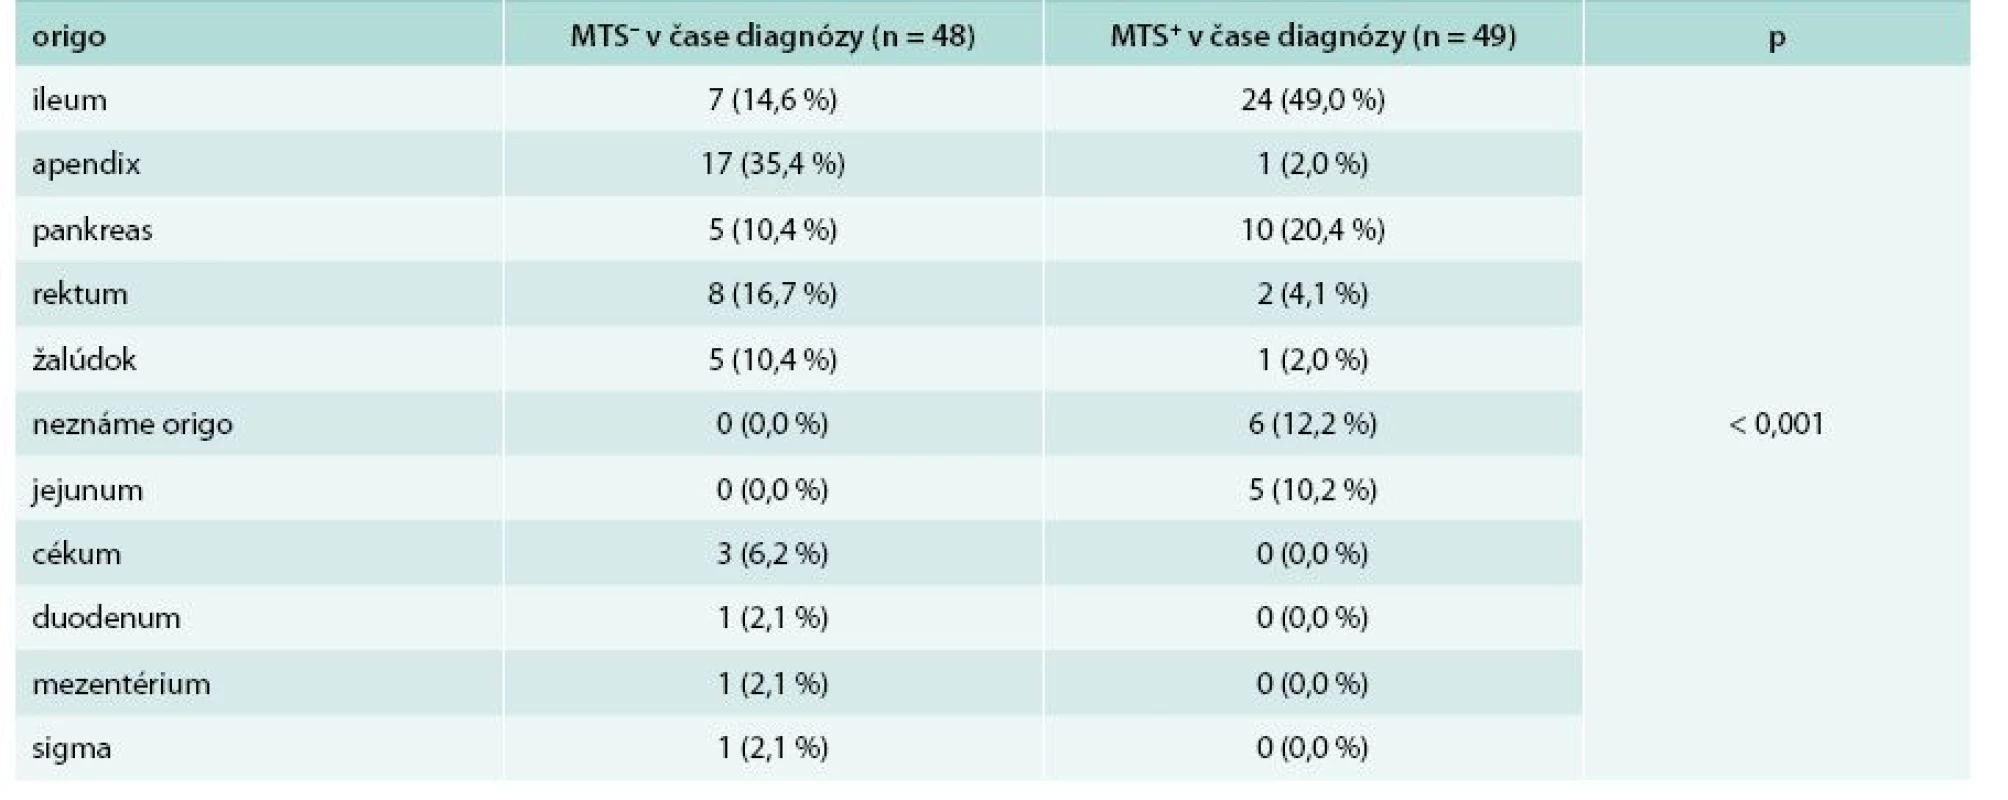 Porovnanie lokalizácie primárneho tumoru z hľadiska výskytu metastáz v čase stanovenia diagnózy